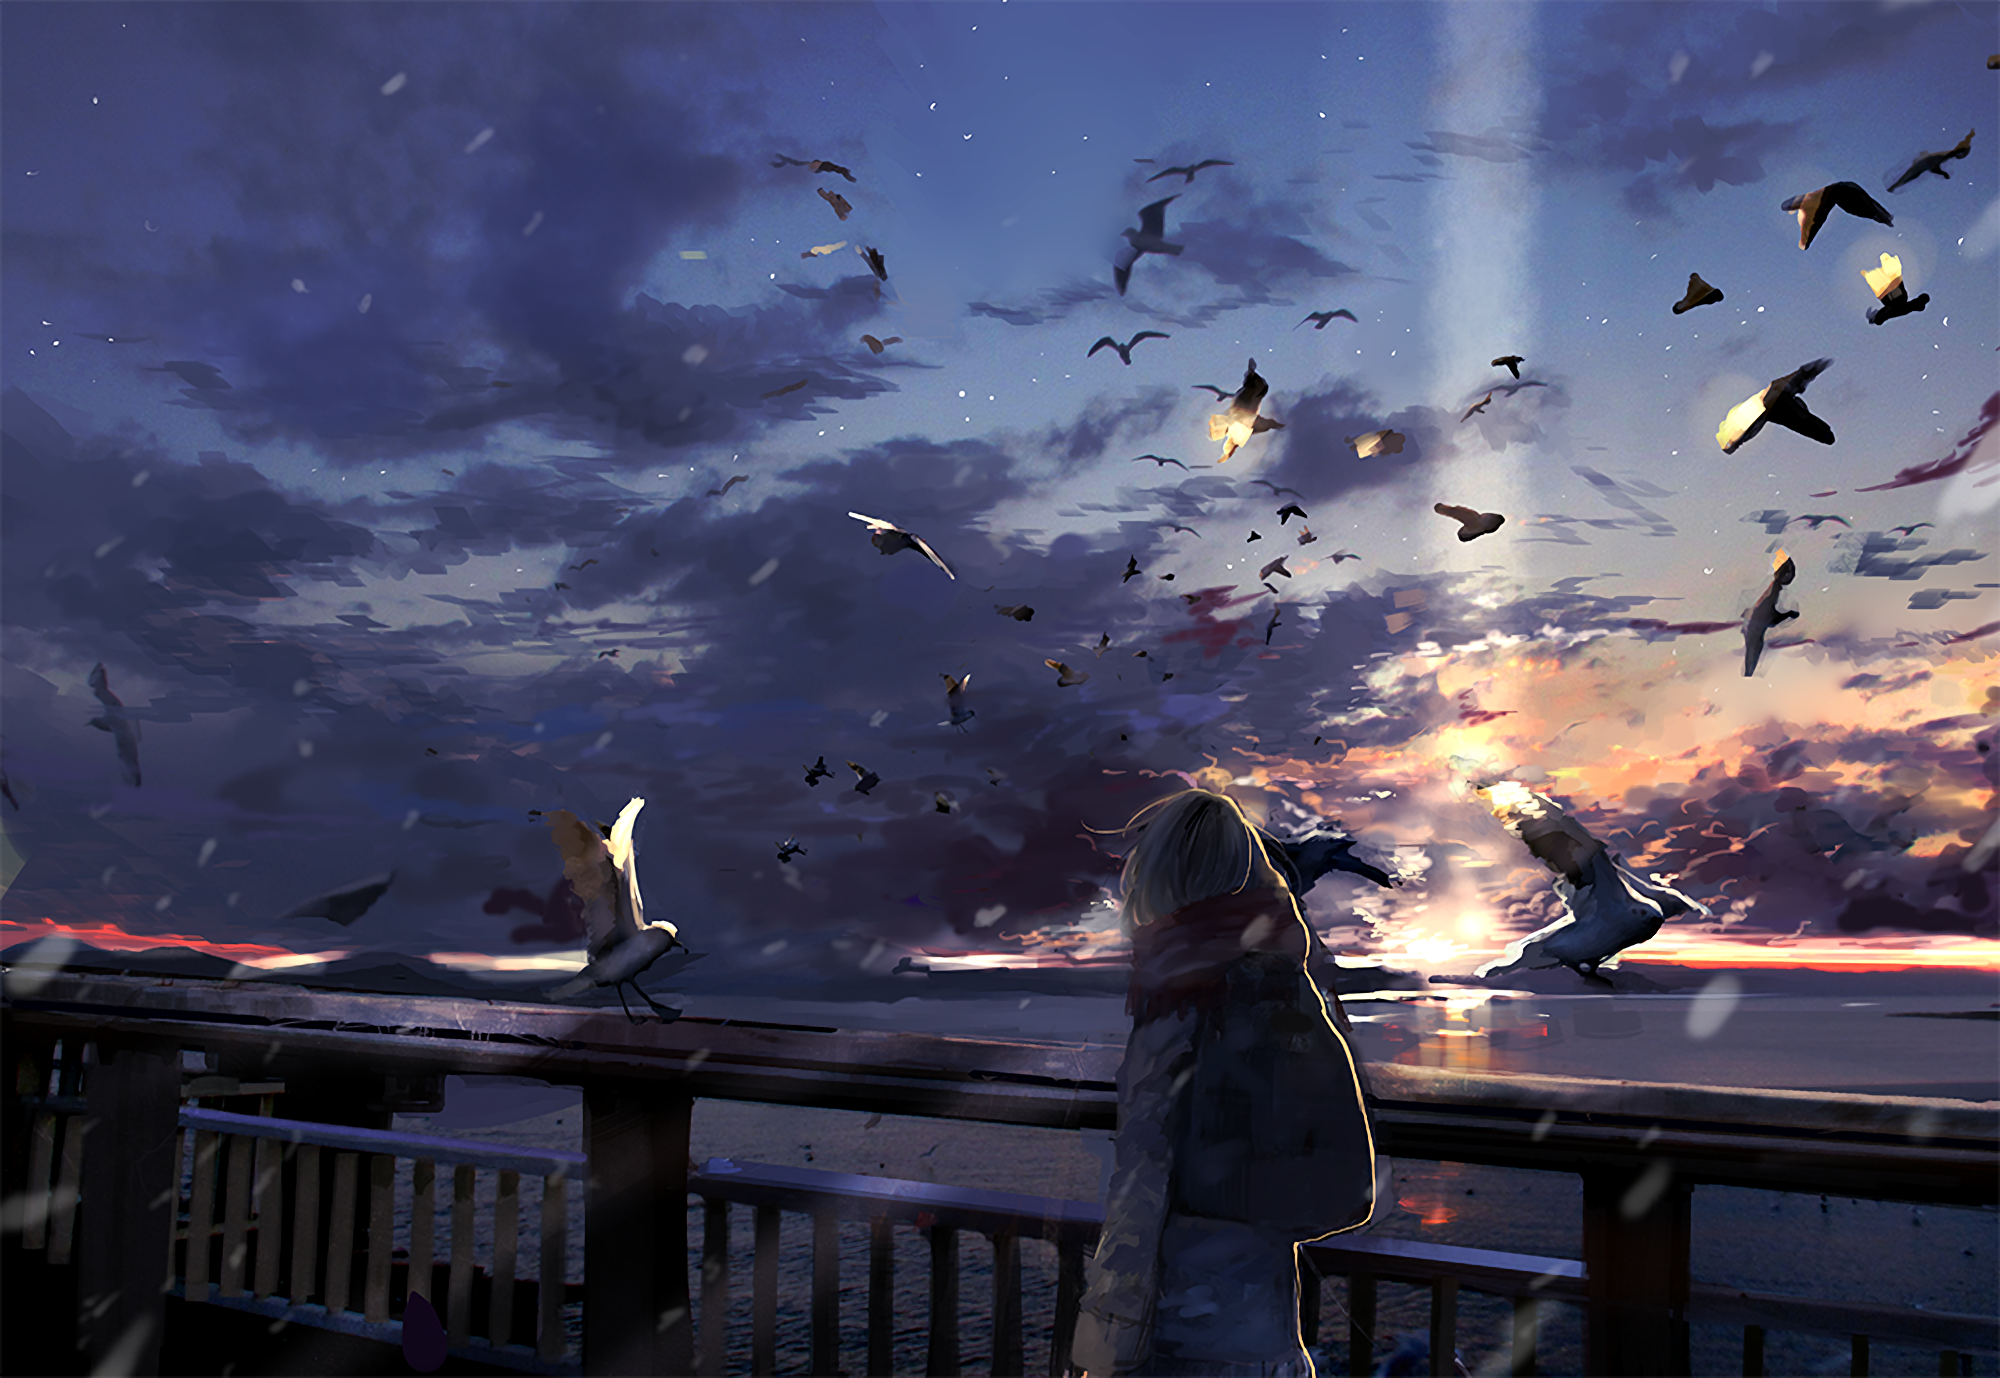 Bird Cloud Girl Original Anime Sky Sunset 2000x1378